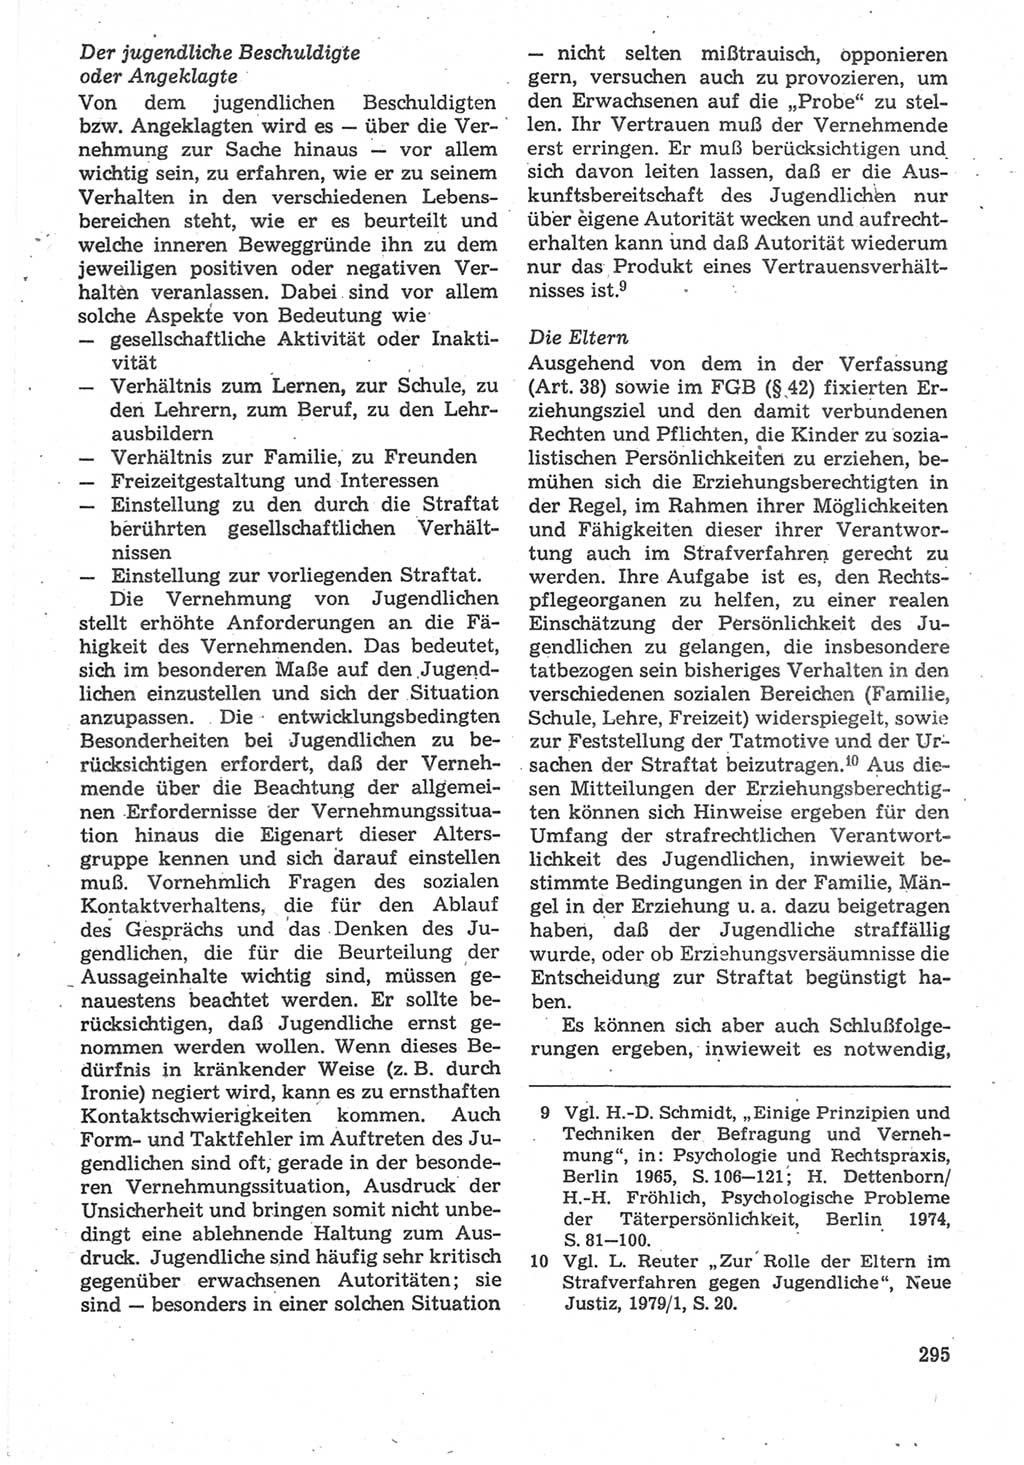 Strafverfahrensrecht [Deutsche Demokratische Republik (DDR)], Lehrbuch 1987, Seite 295 (Strafverf.-R. DDR Lb. 1987, S. 295)